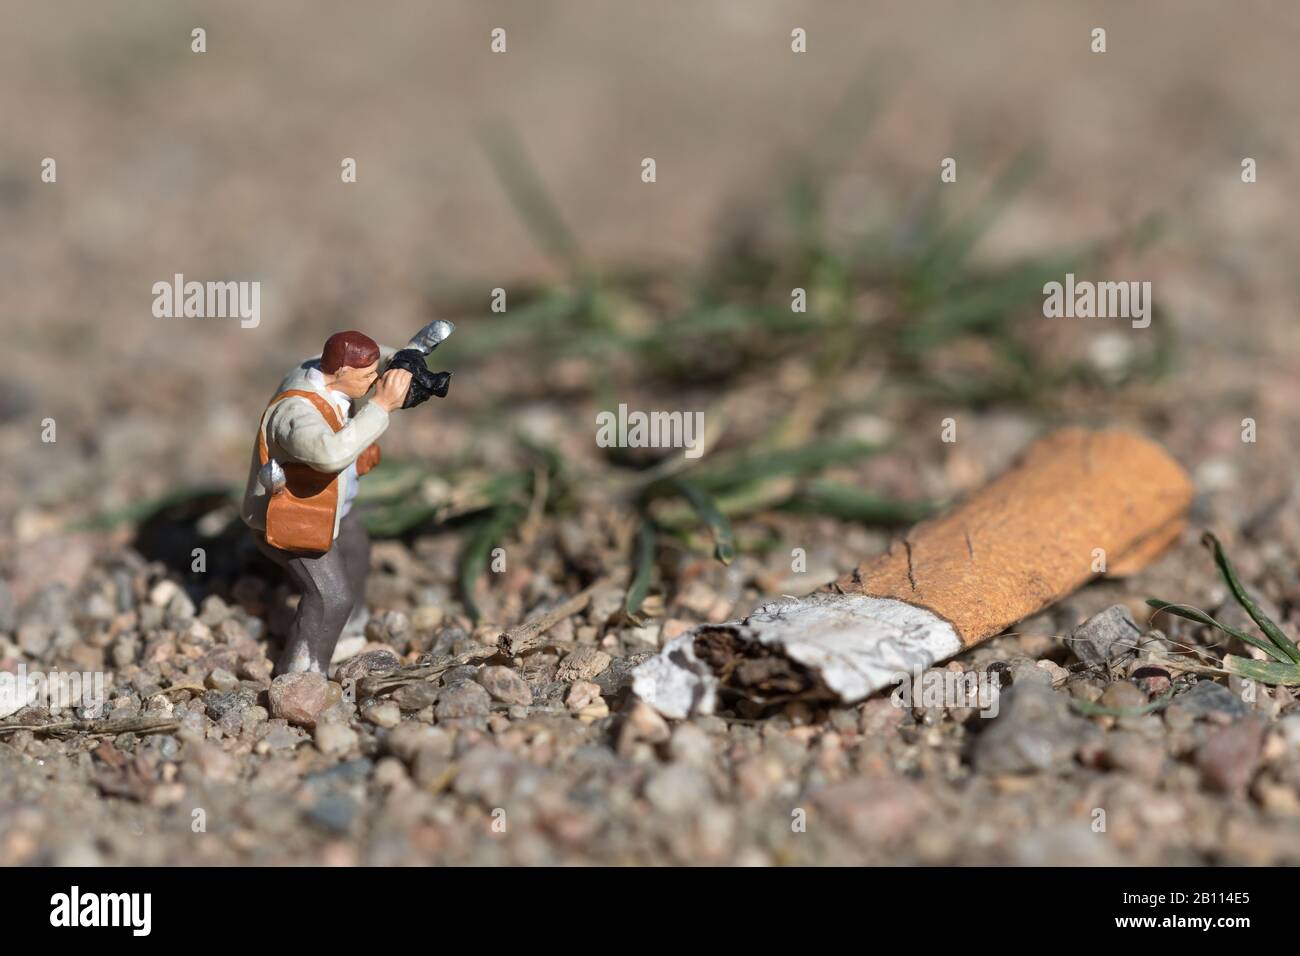 le photographe miniature documente la pollution environnementale Banque D'Images